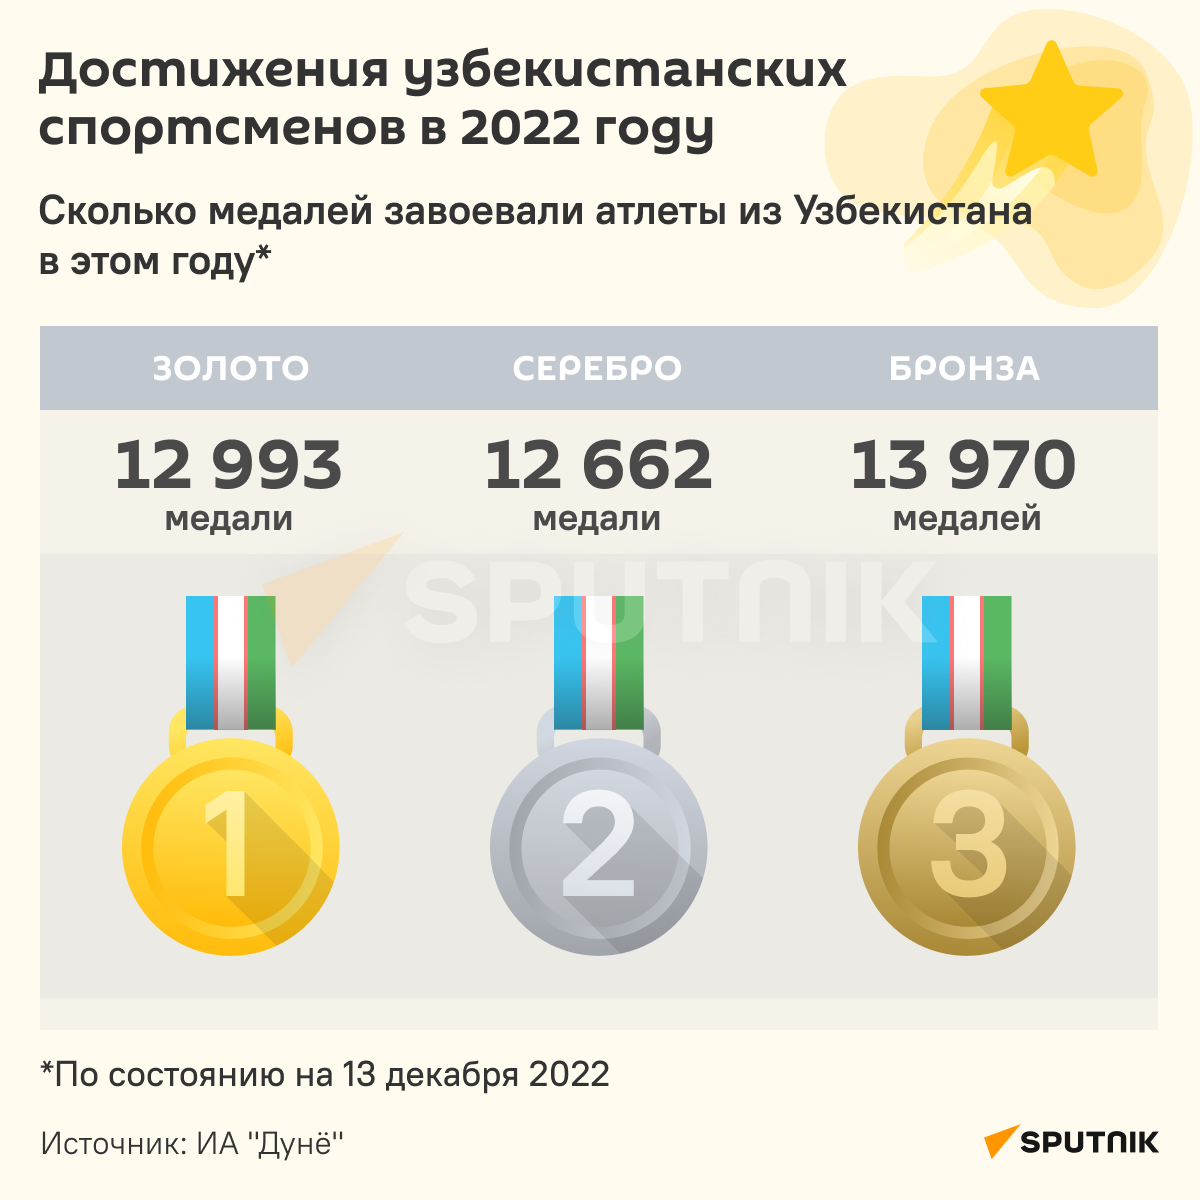 Достижения узбекистанских спортсменов в 2022 году инфографика  - Sputnik Узбекистан